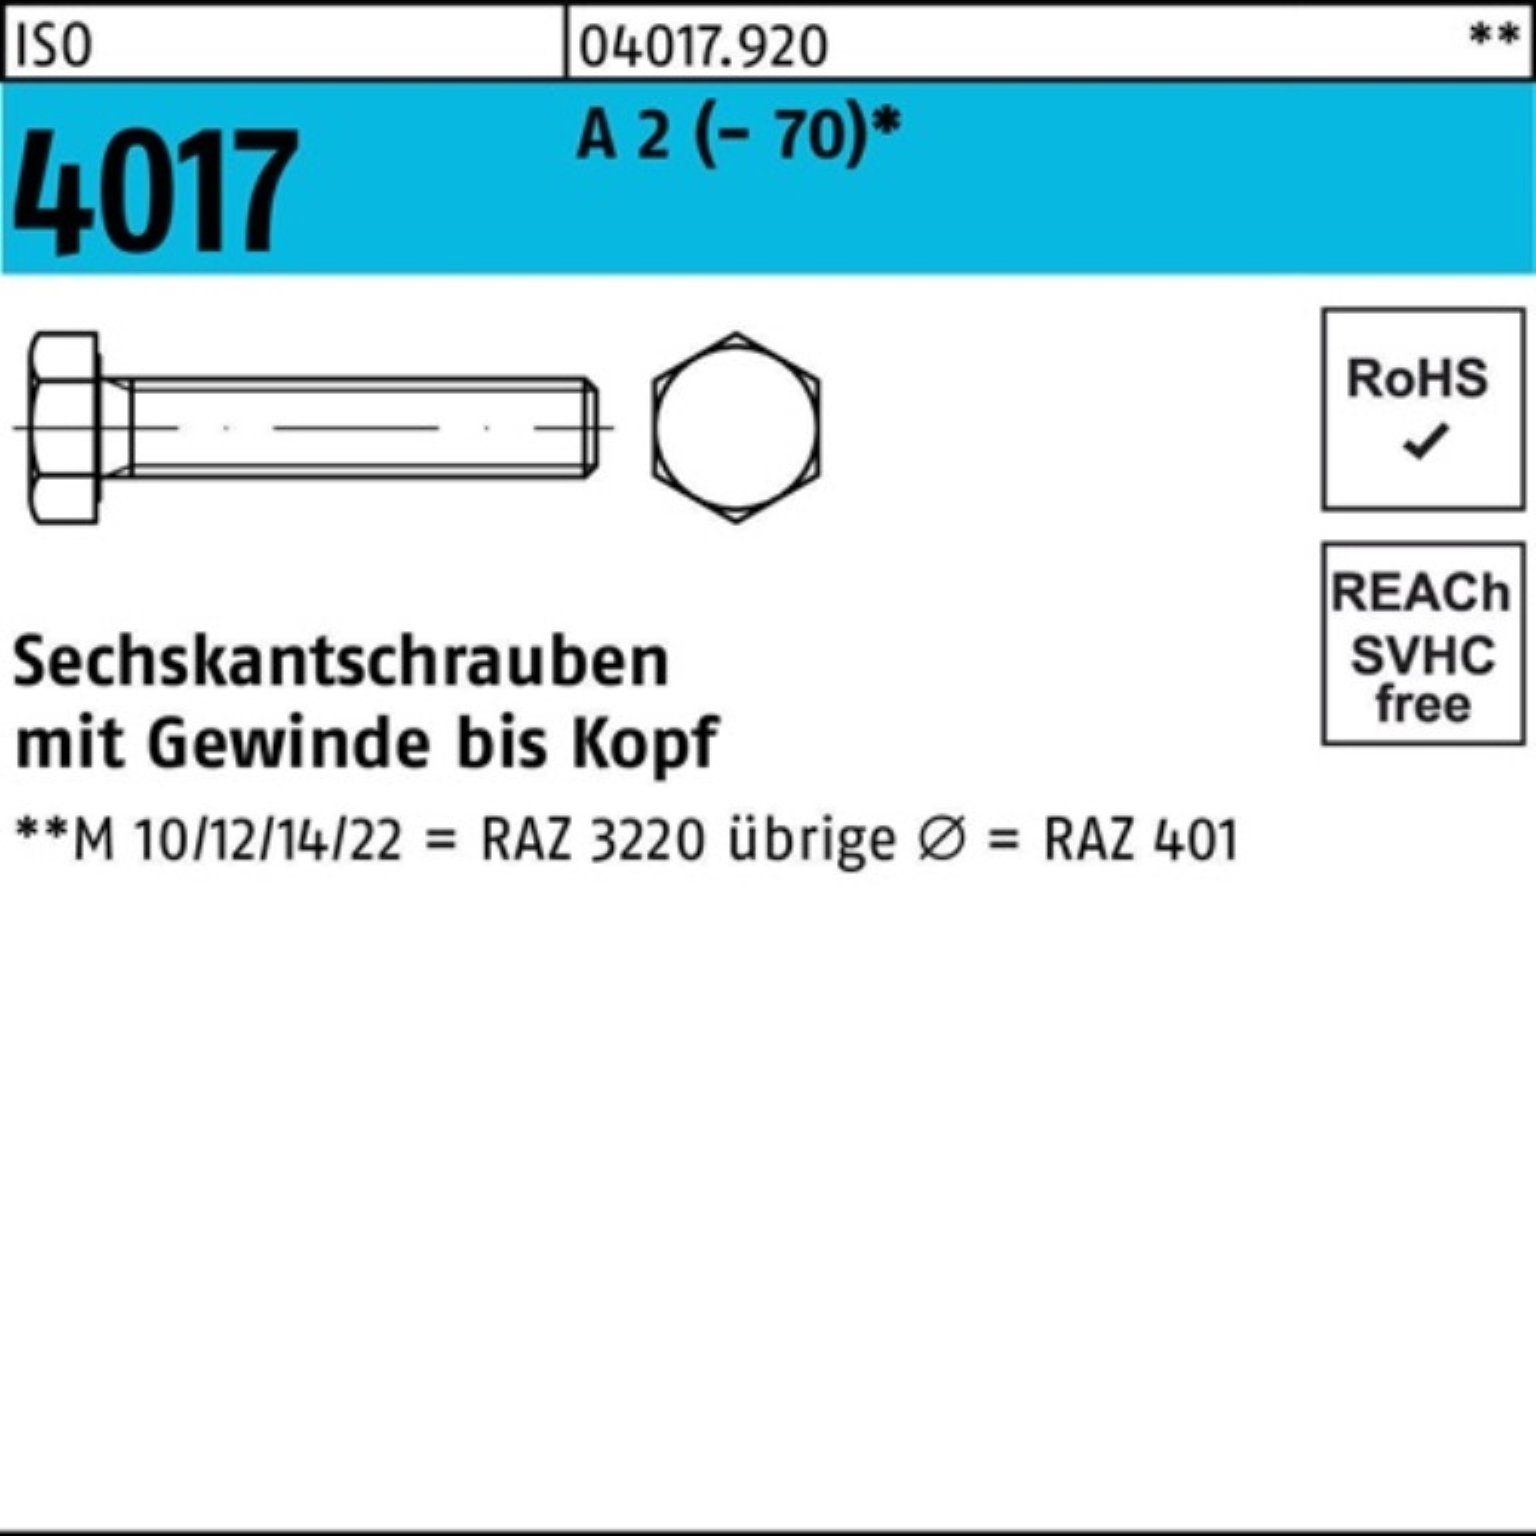 Bufab Sechskantschraube 200er Pack Stück M4x 200 401 4017 ISO ISO VG 16 Sechskantschraube 2 A